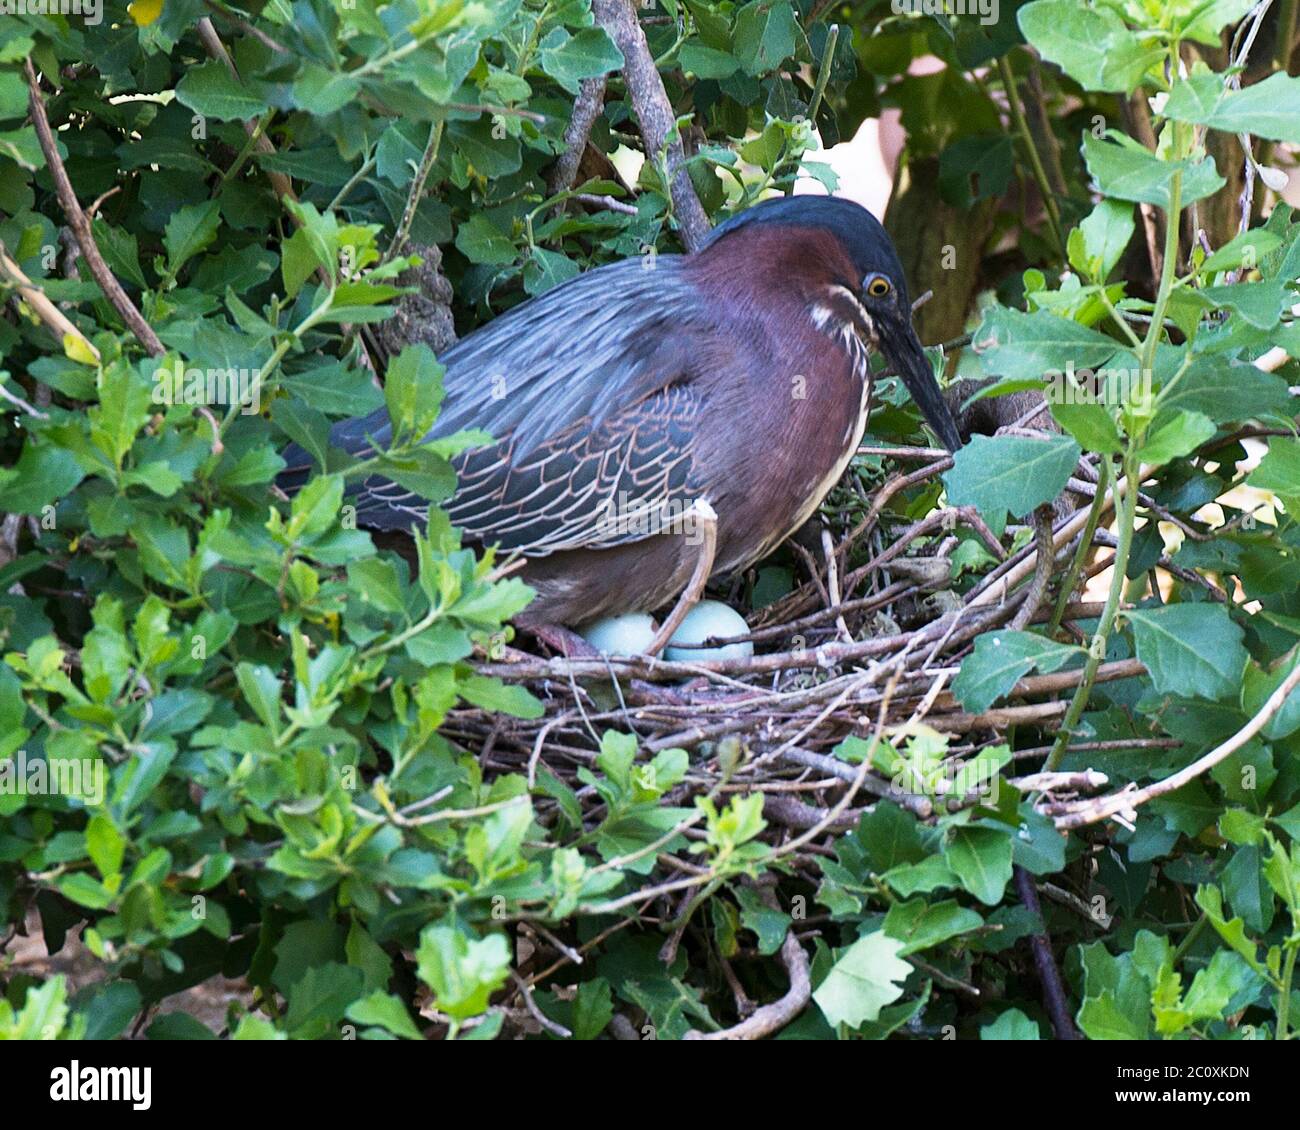 Grüner Reiher Vogel mit Eiern auf dem Nest mit Hintergrund und Vordergrundbelaub mit Eiern, grün blauen Federn Gefieder, Schnabel, in seiner Umgebung. Stockfoto